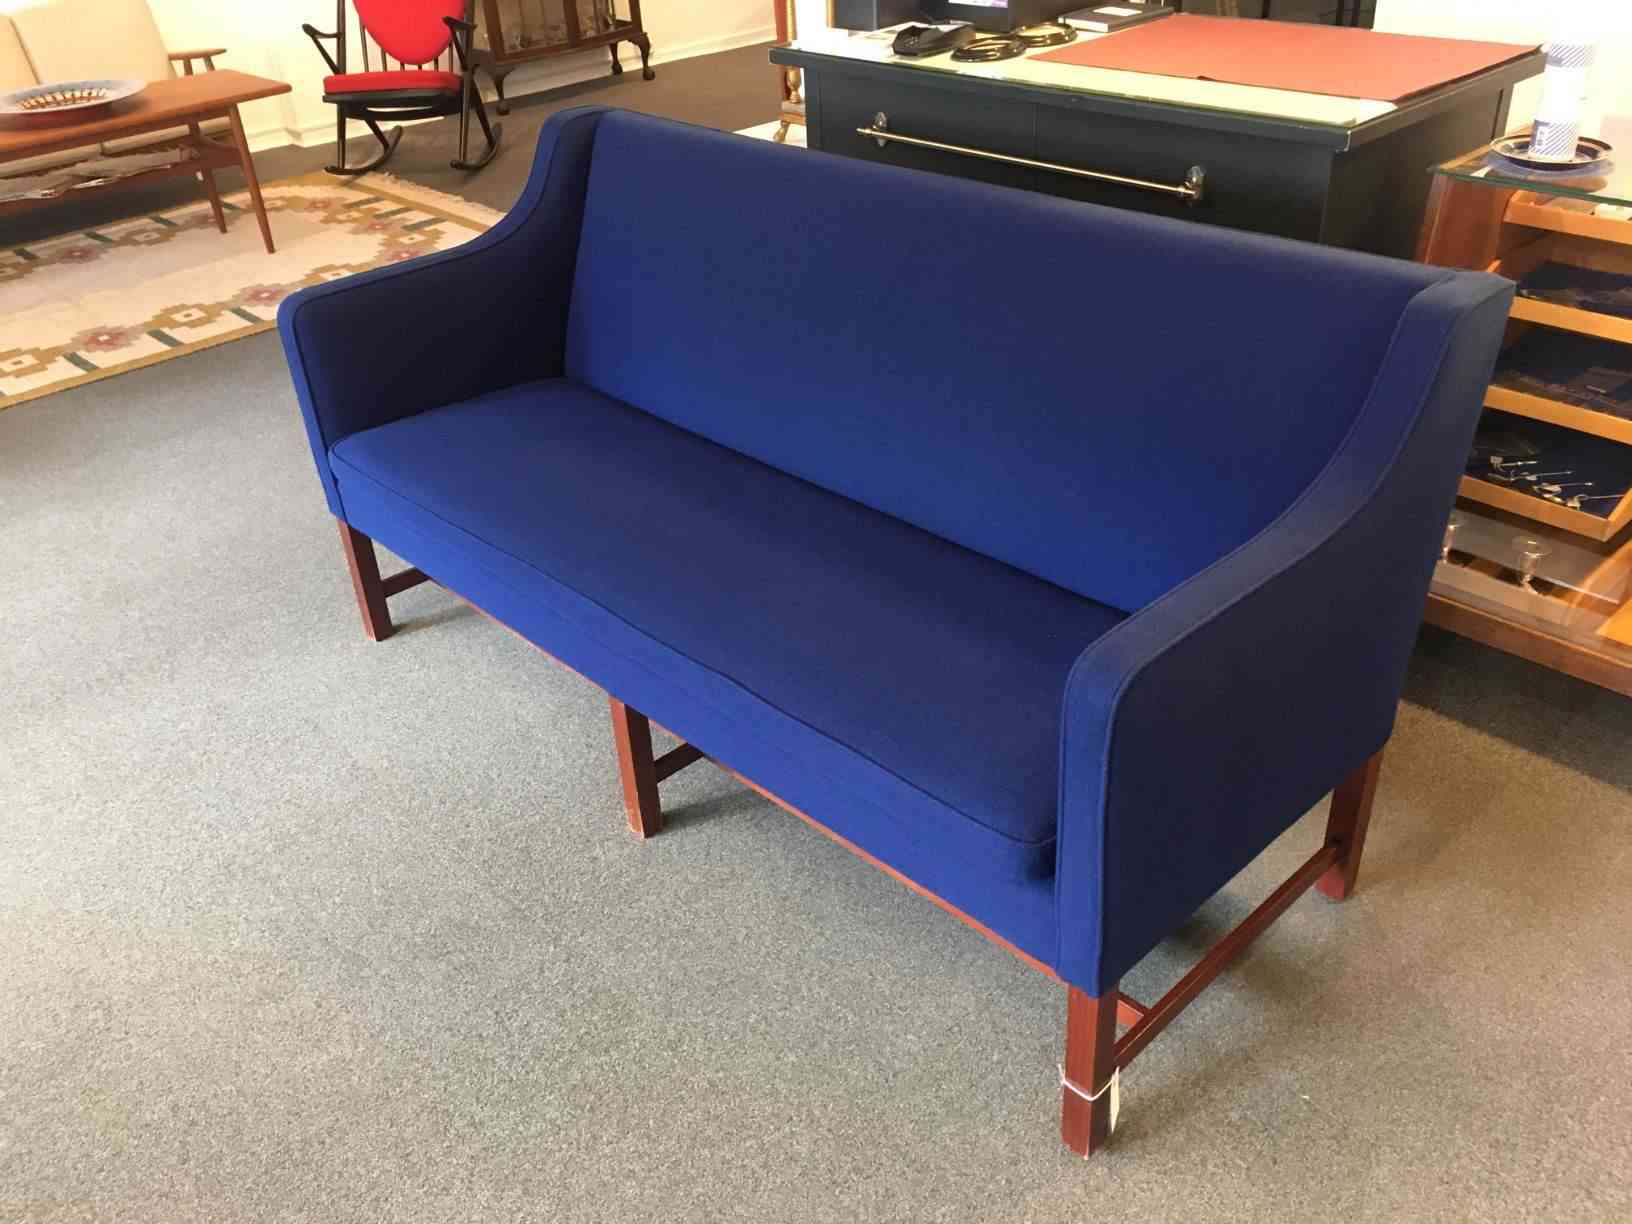 Koboltblå 3 personers sofa ompolstret med uld, her er der både kvalitet og sidekomfort, meget flot stand. Dansk design når det er godt. Pris: 1.250,- Kr.